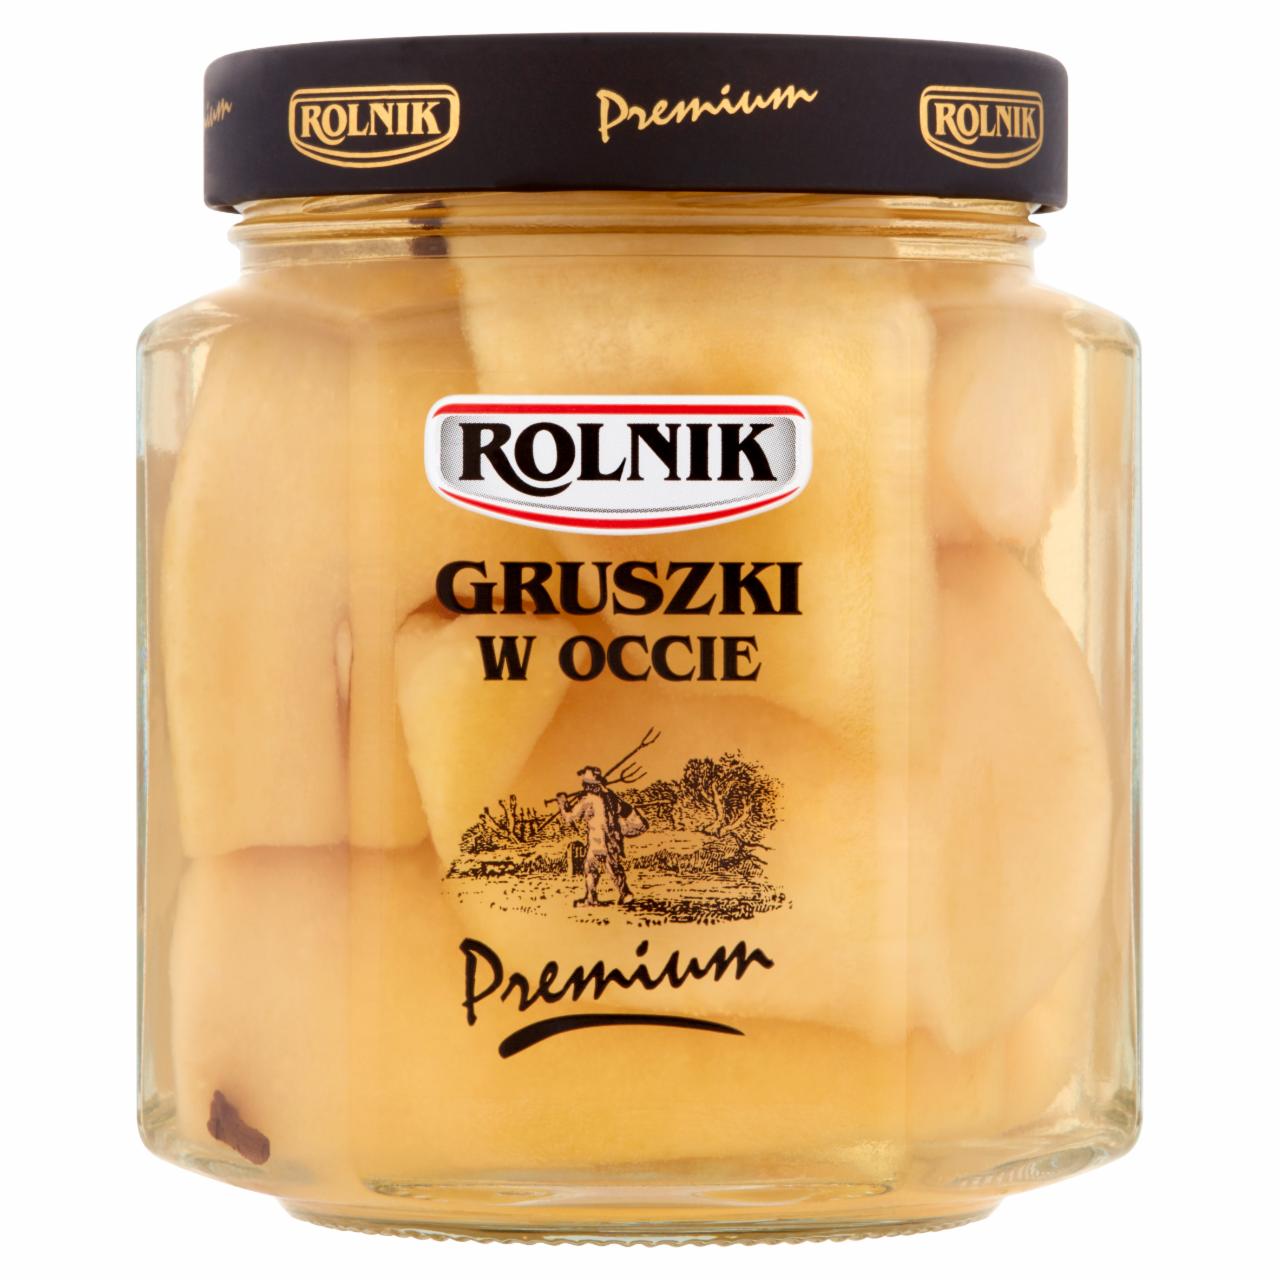 Zdjęcia - Rolnik Premium Gruszki w occie 530 g